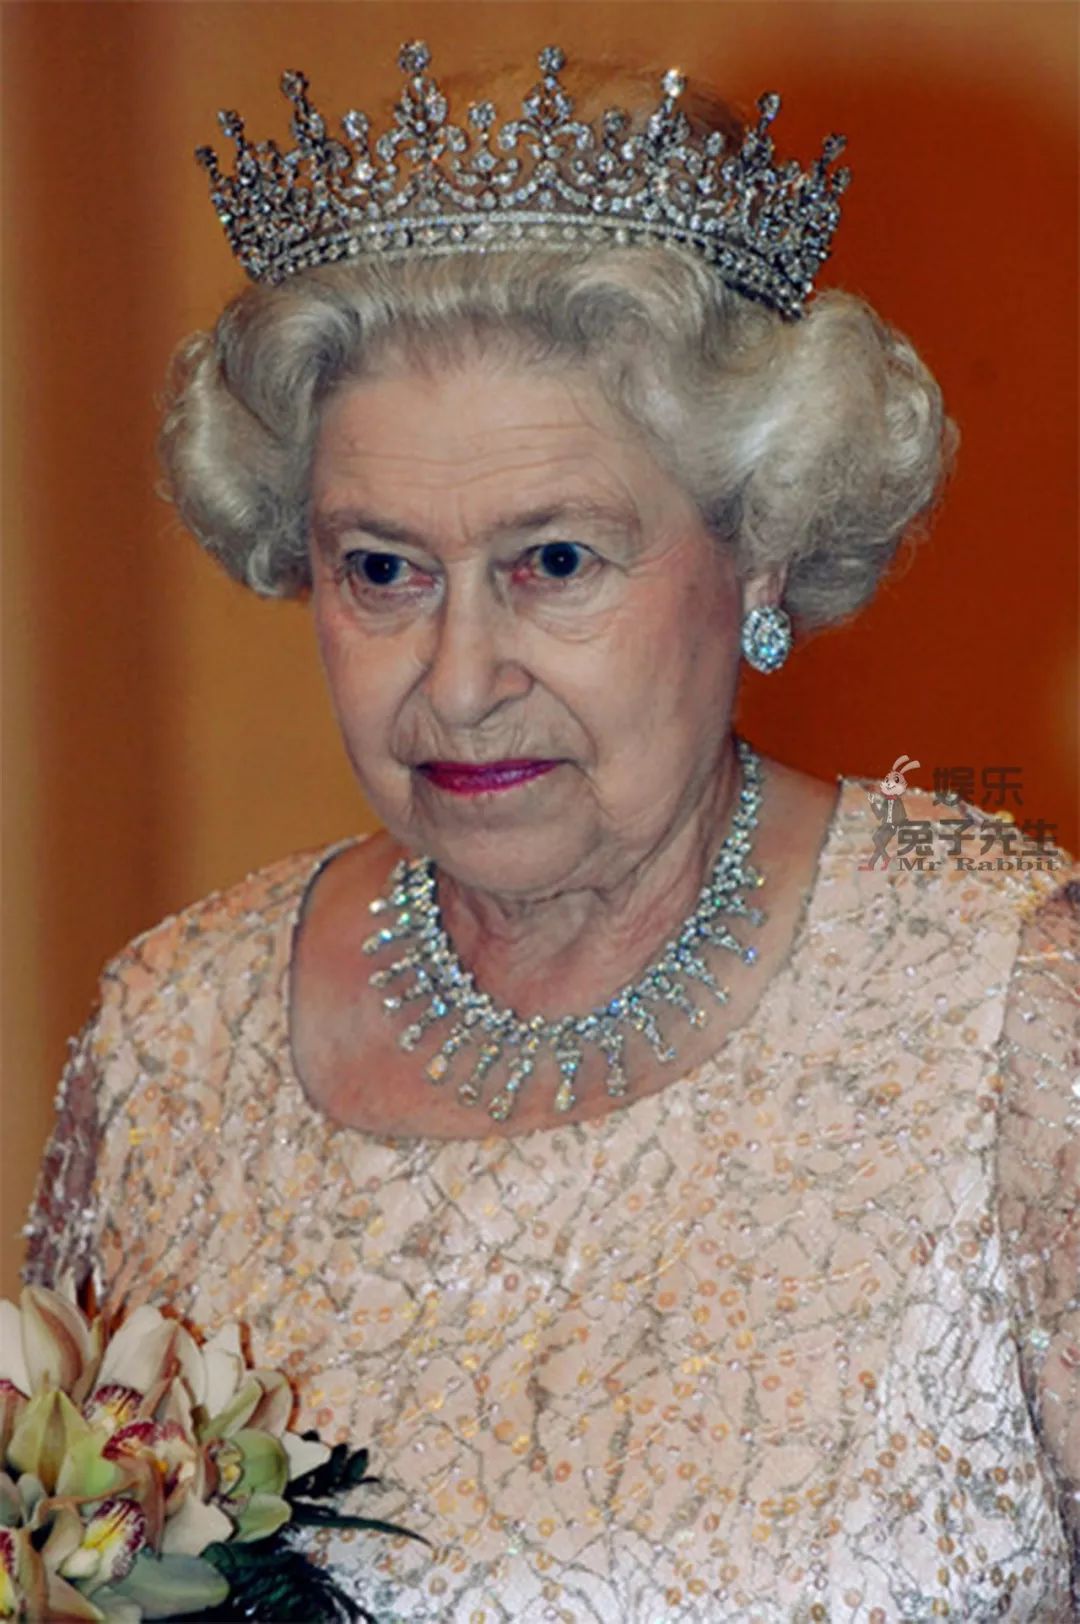 伊丽莎白女王已经在位66年,成为英国历史上在位时间最长的君主,她并不